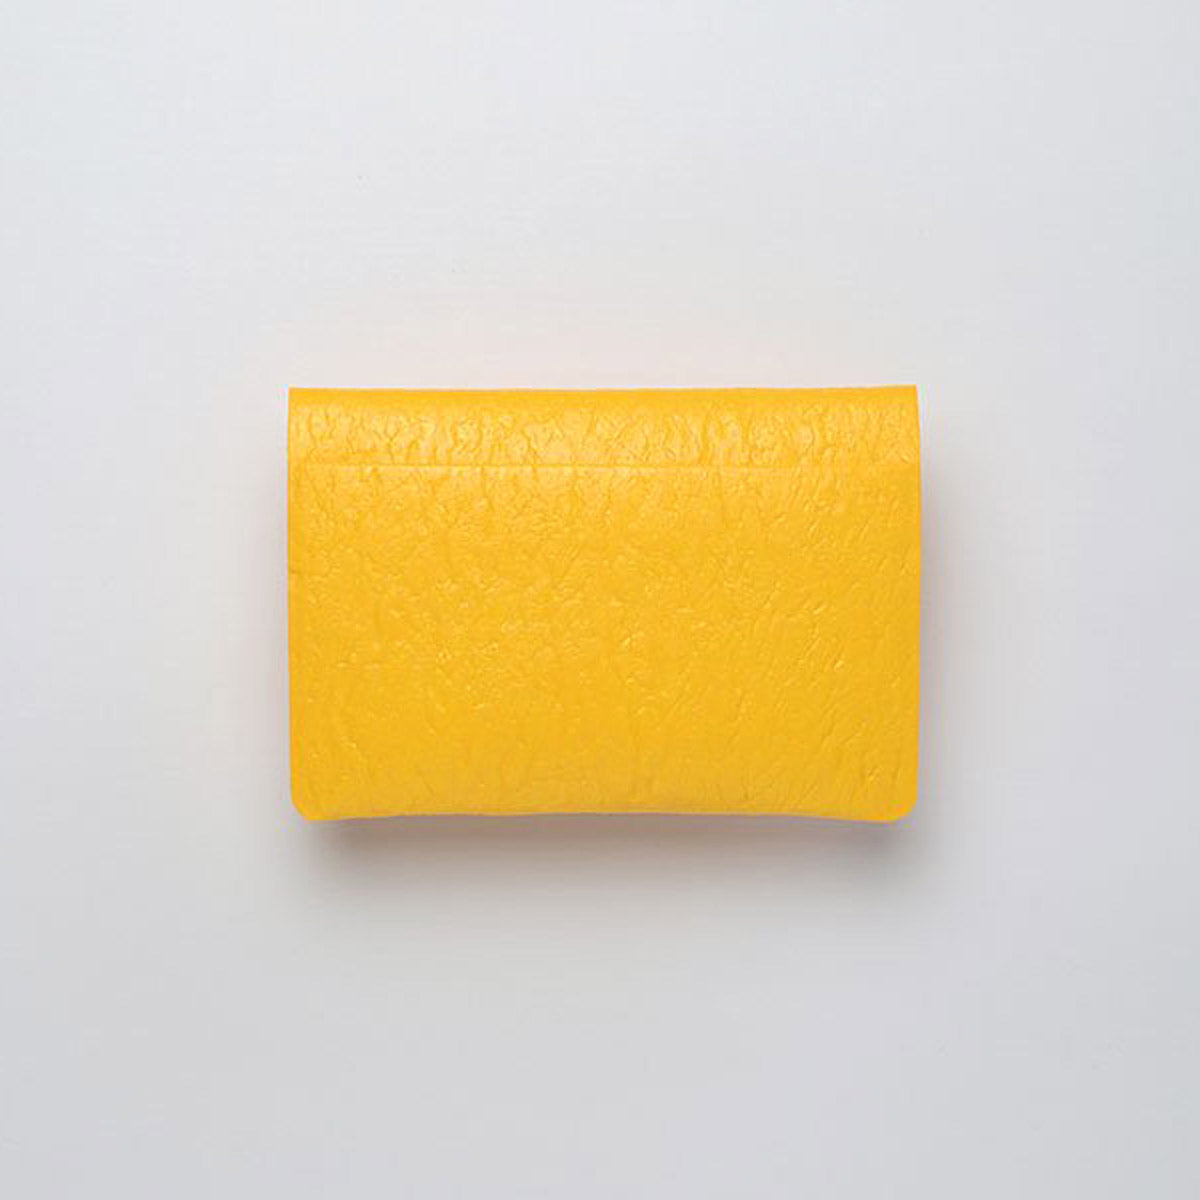 PE CARD CASE / Yellow